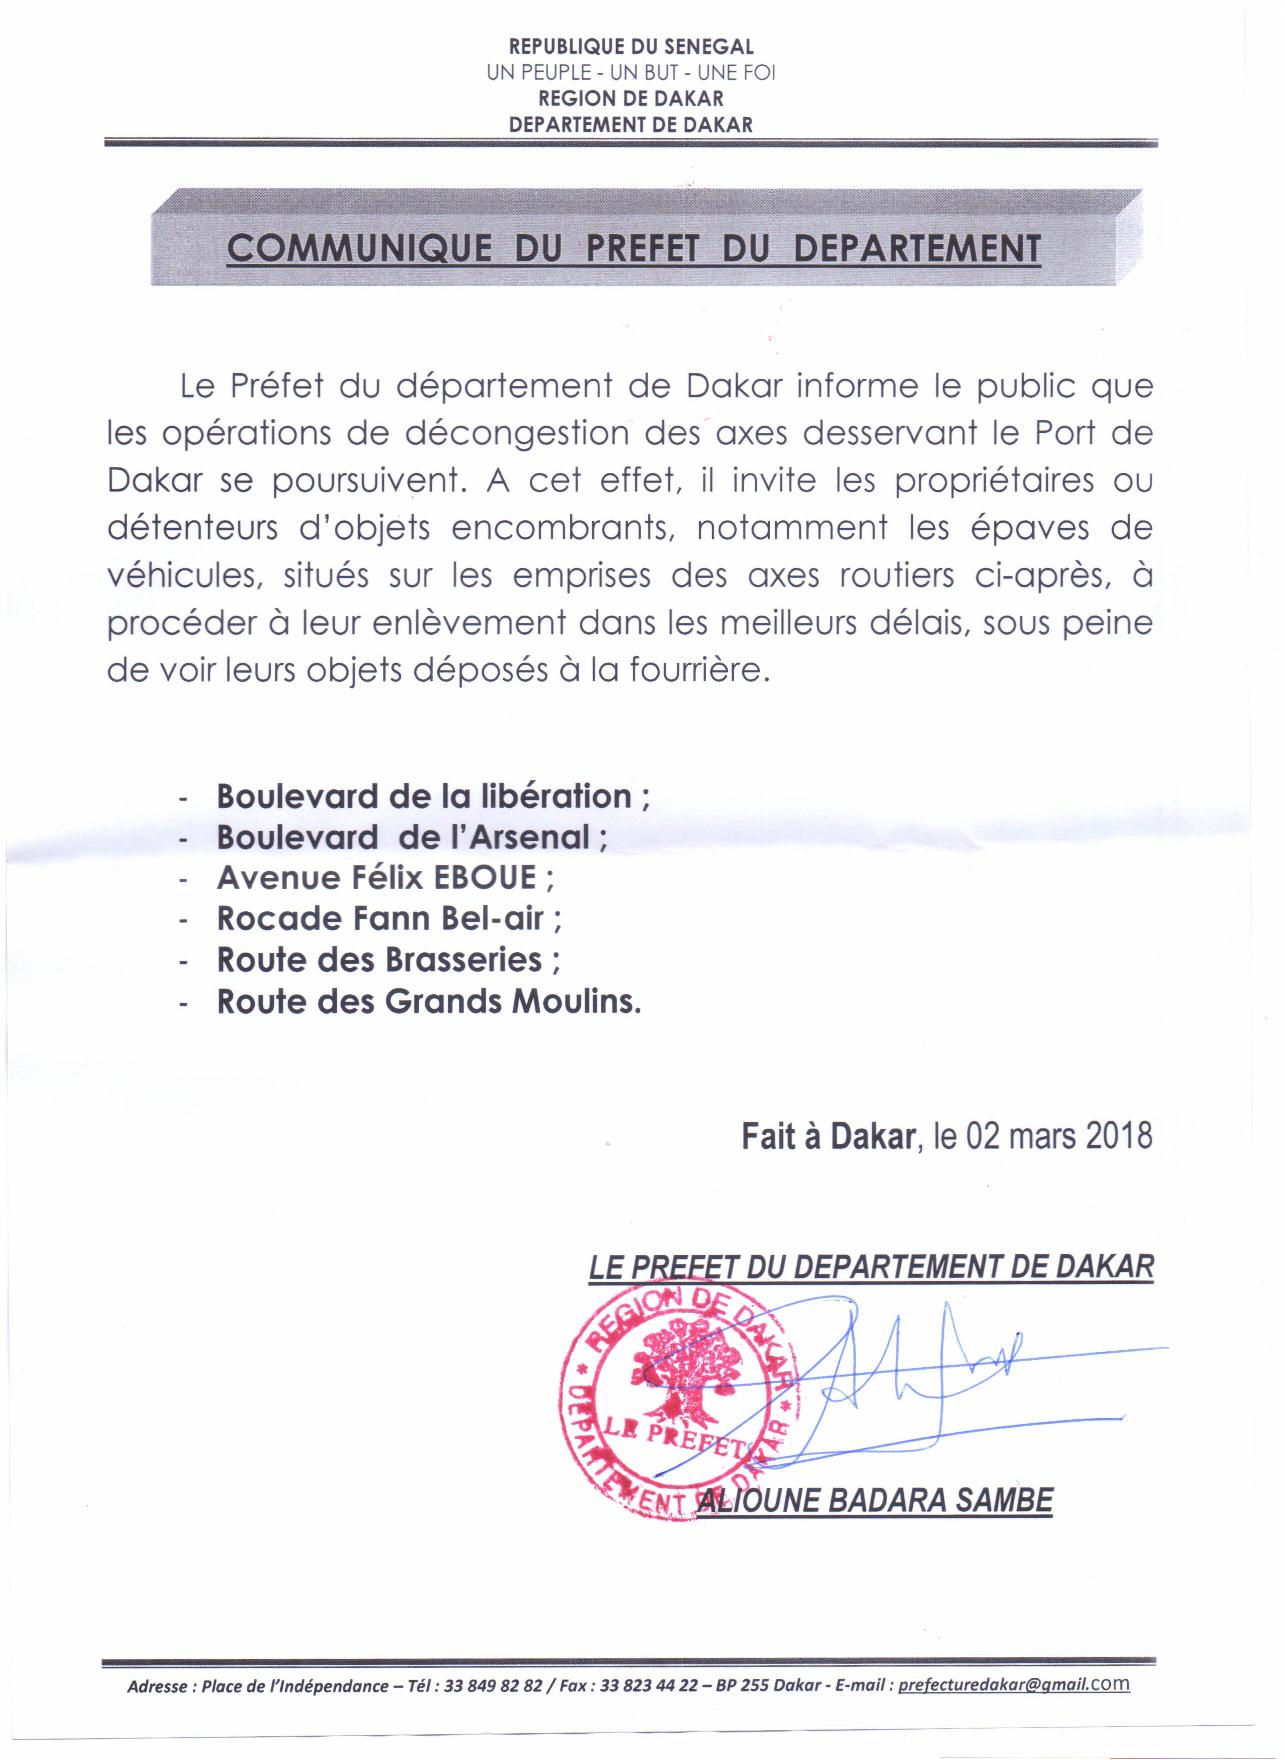 Communiqué du préfet de Dakar : la décongestion des axes routiers desservant le Port de Dakar, se poursuit